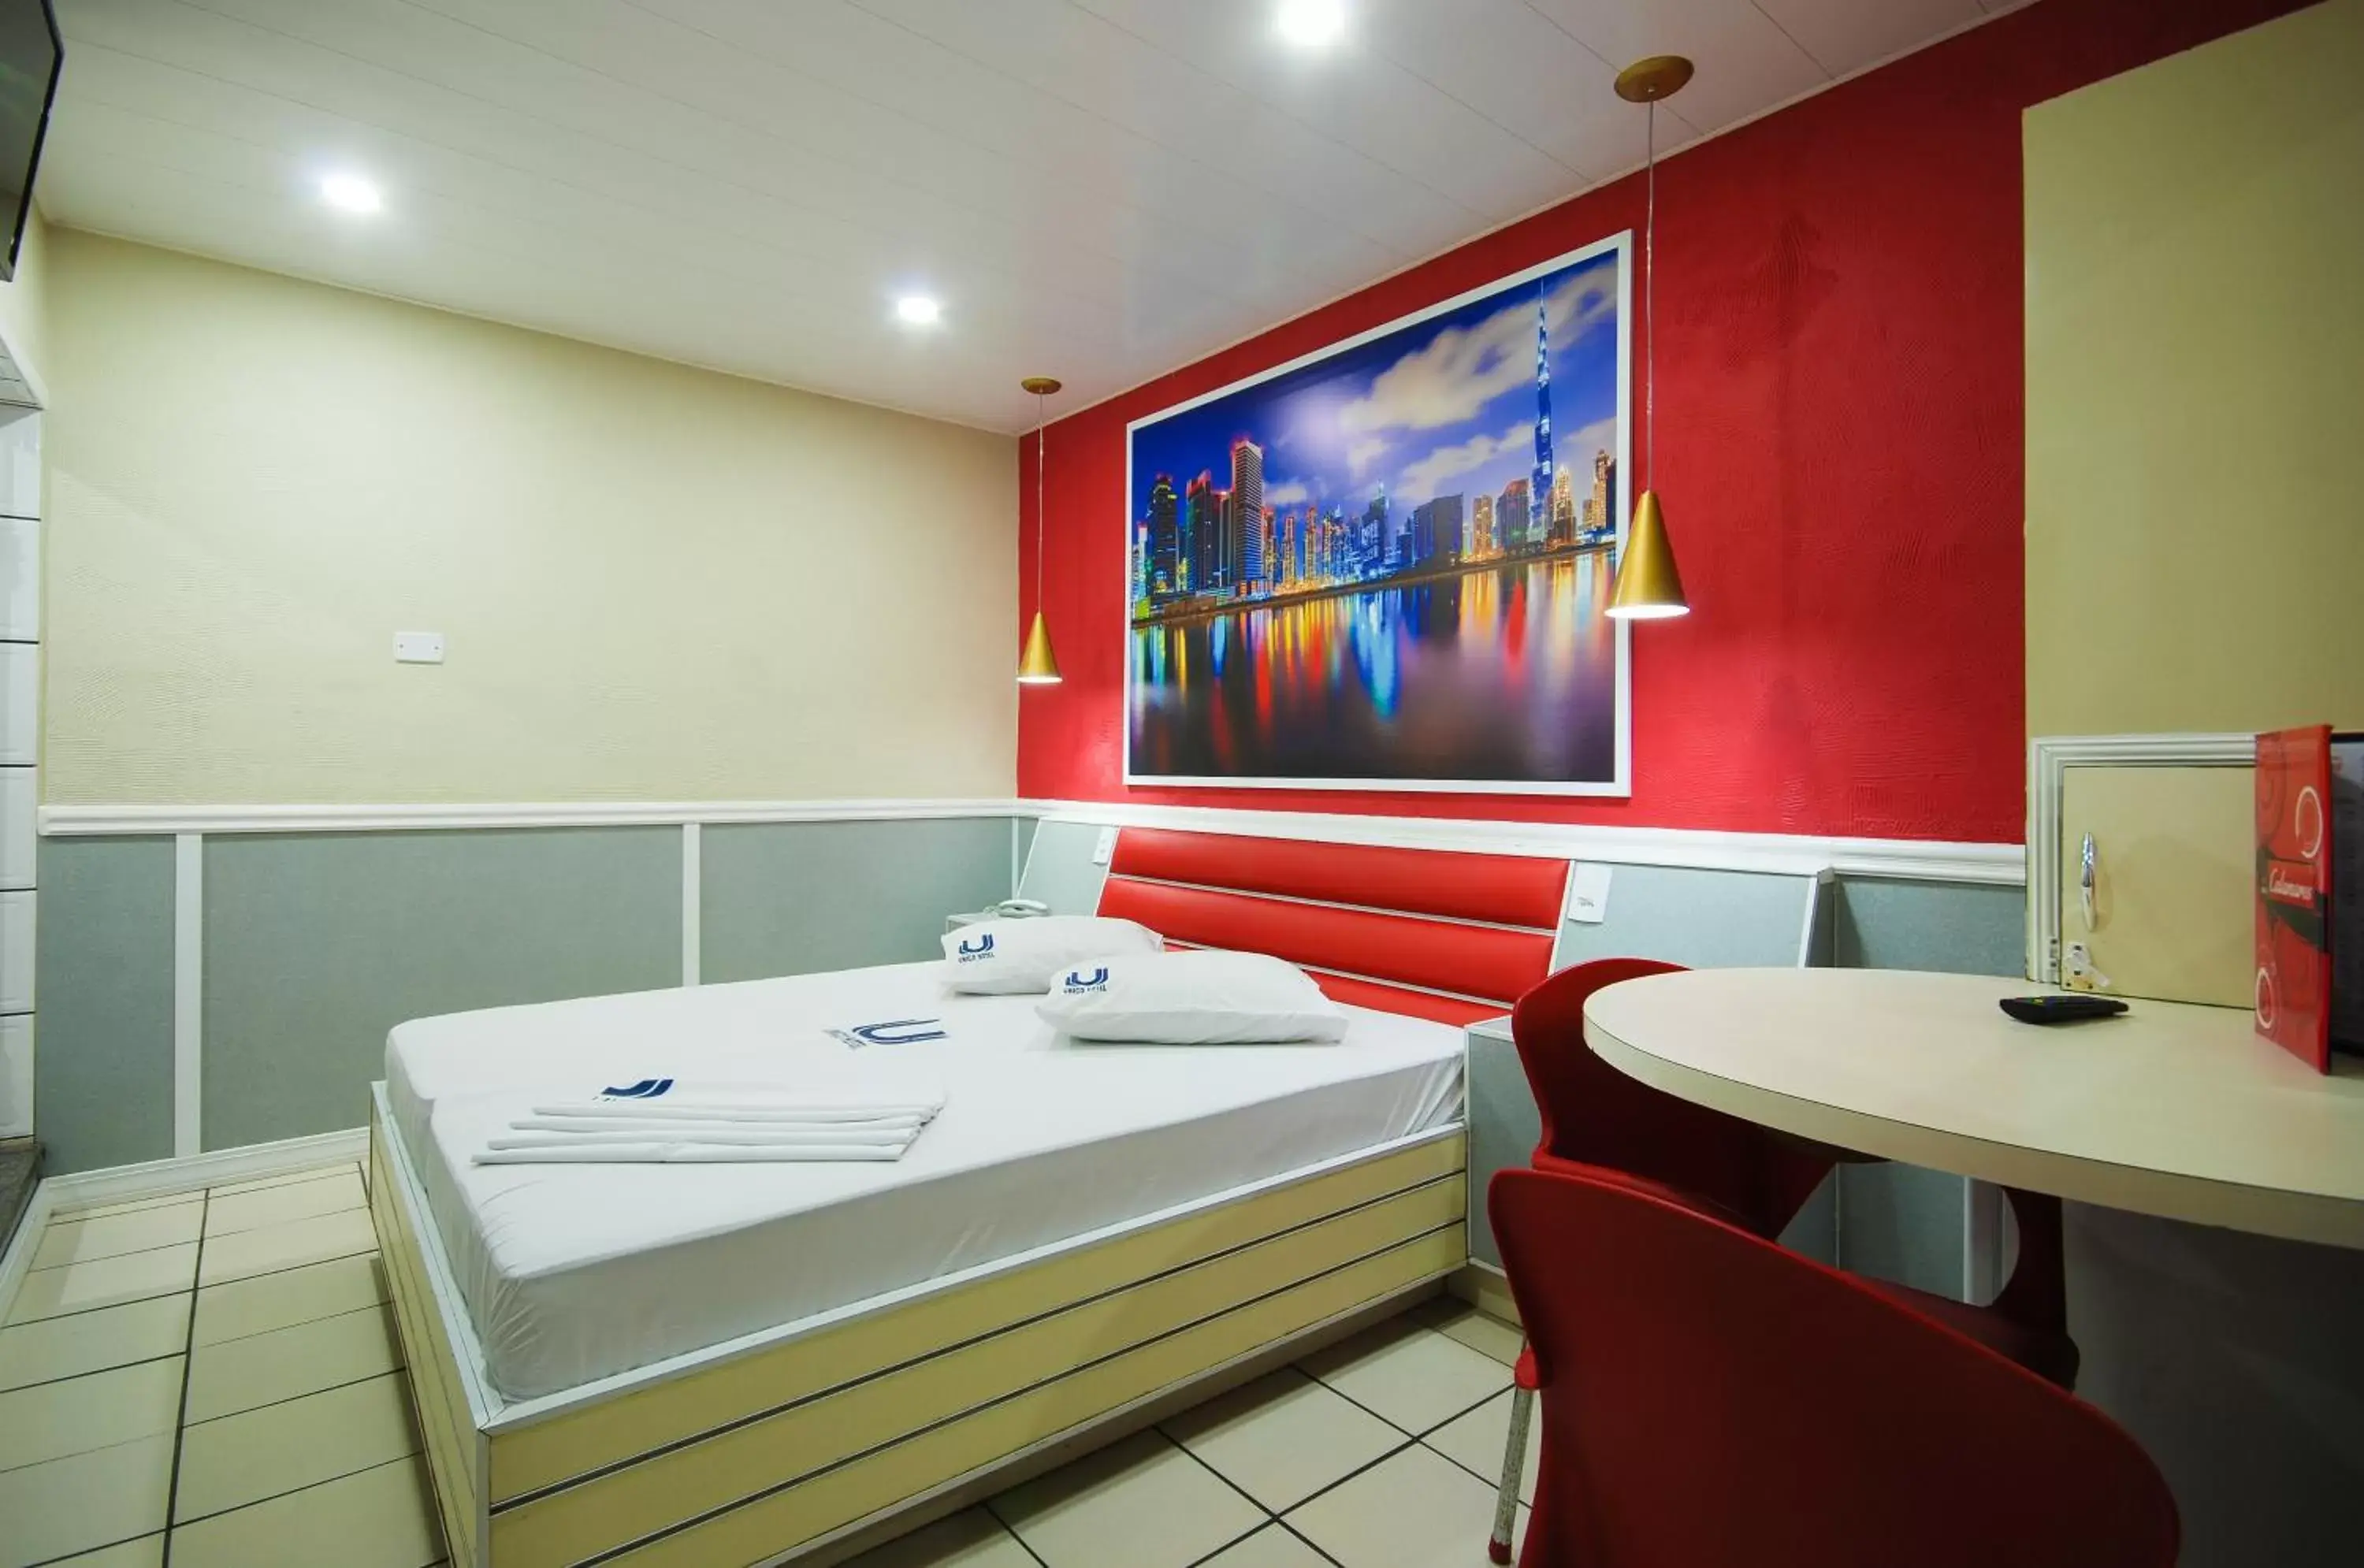 Dining area, Bathroom in Calamares Hotel São Caetano